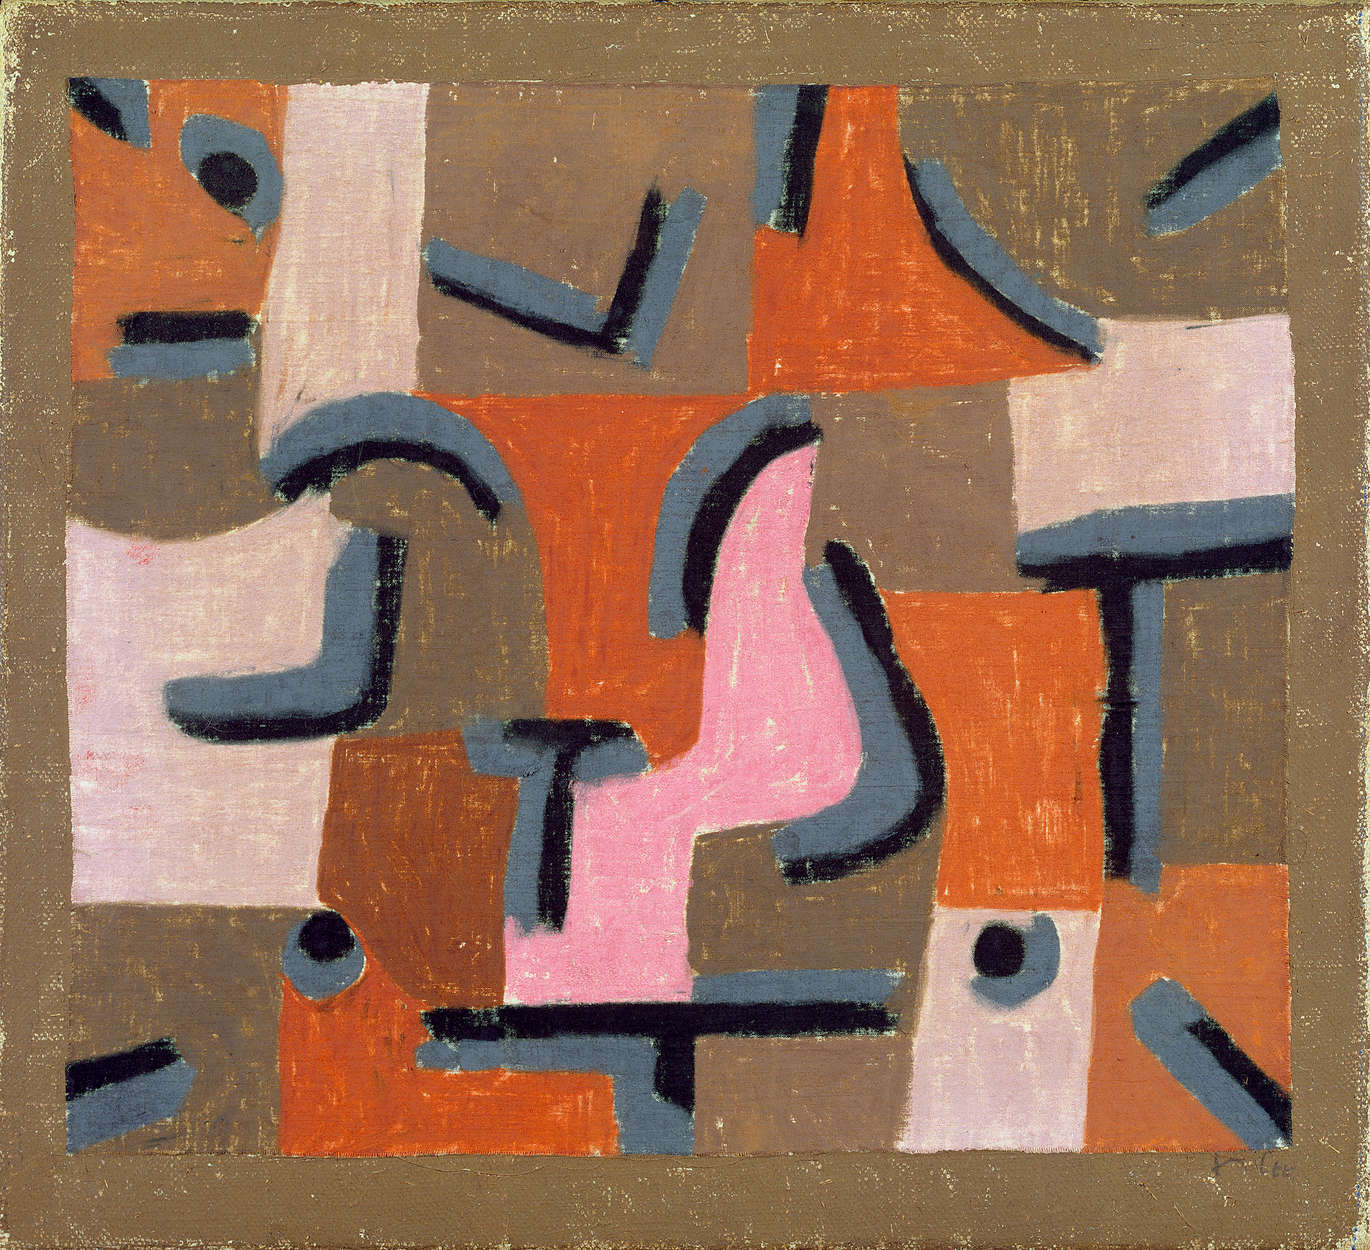             Papier peint panoramique "Centre ville" de Paul Klee
        